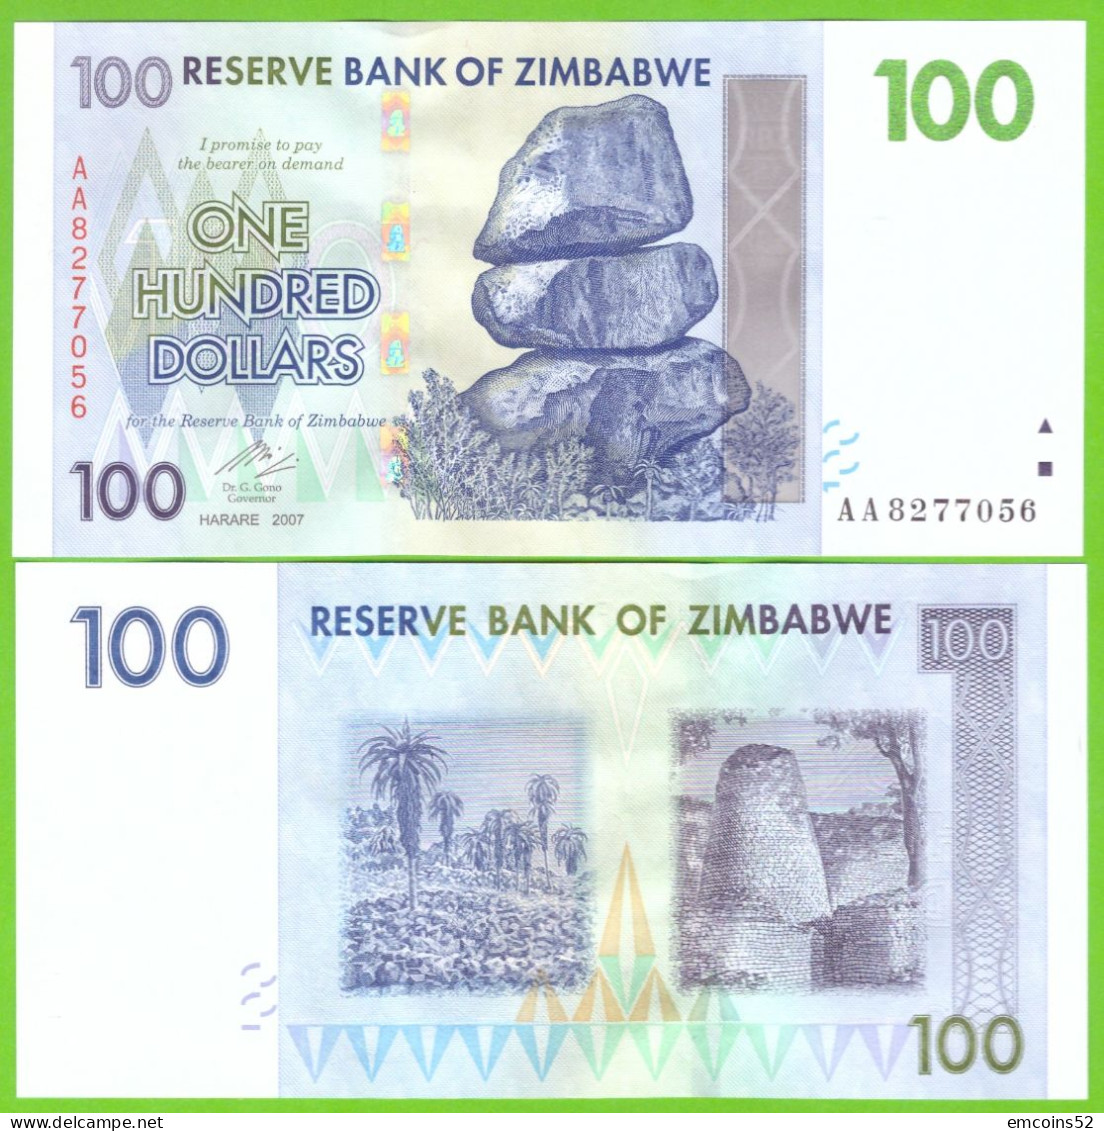 ZIMBABWE 100 DOLLARS 2007  P-69  UNC - Simbabwe